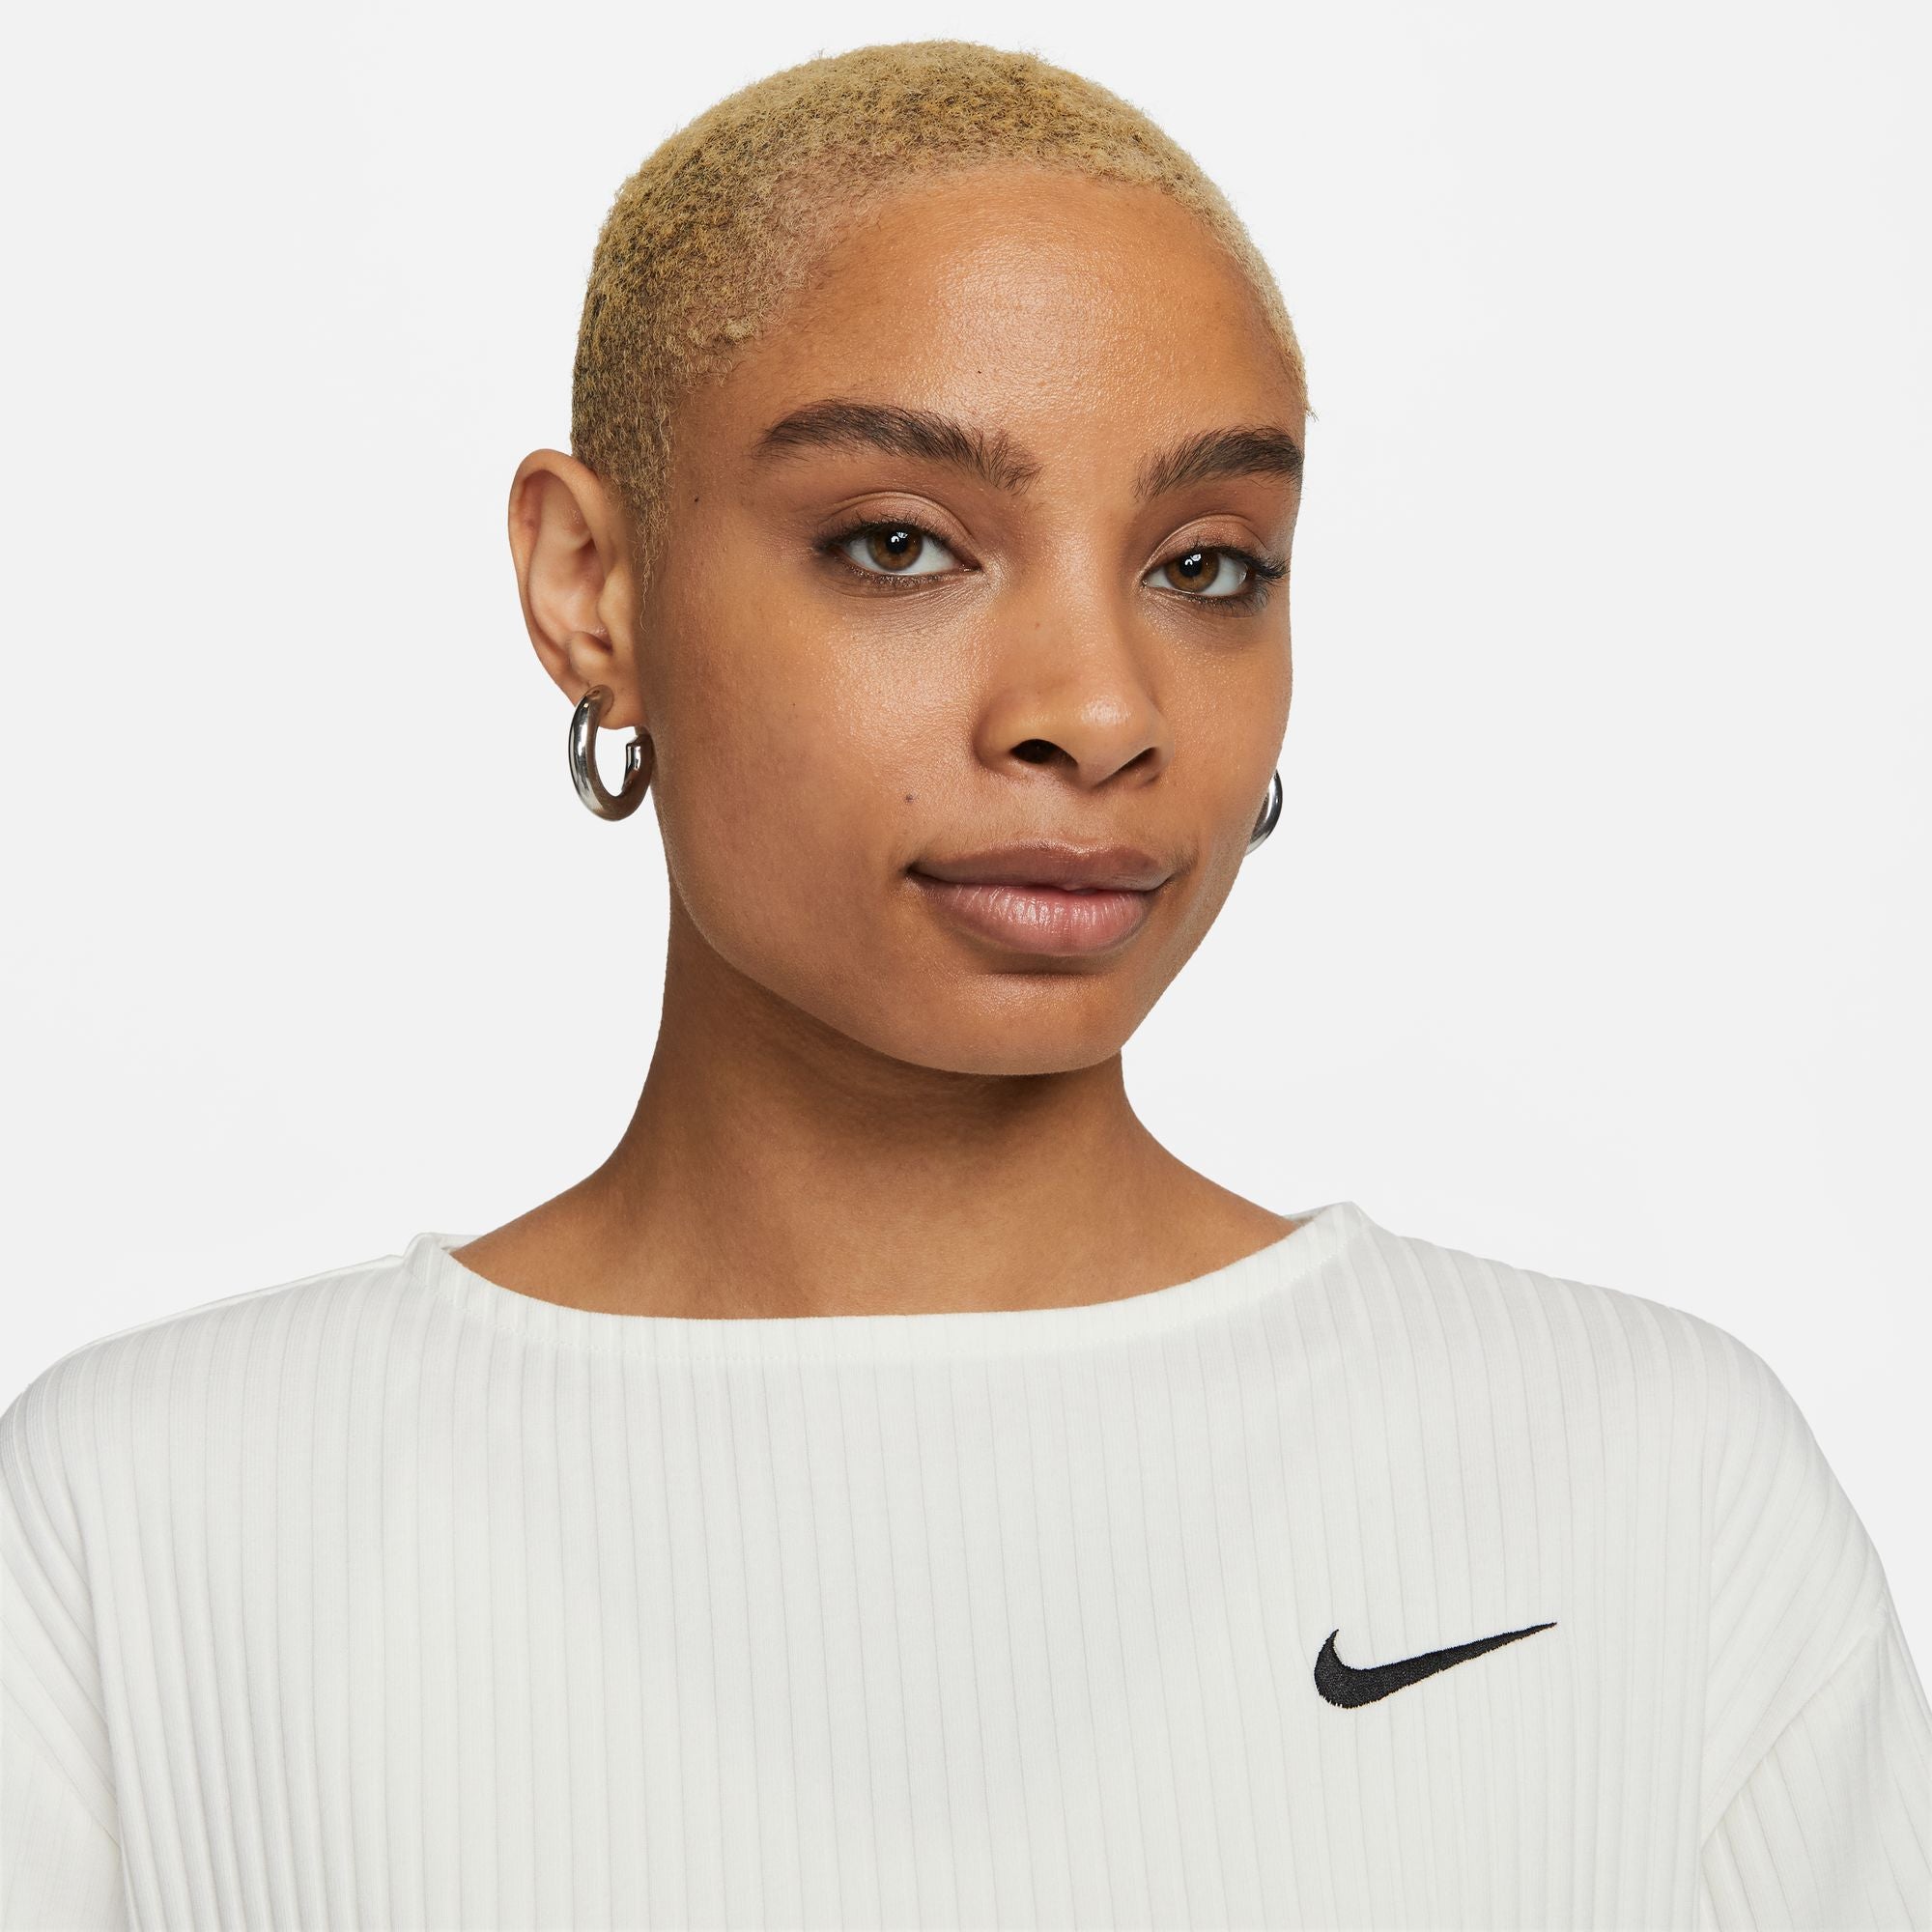 Nike Sportswear Women's Ribbed Jersey Short-Sleeve Top